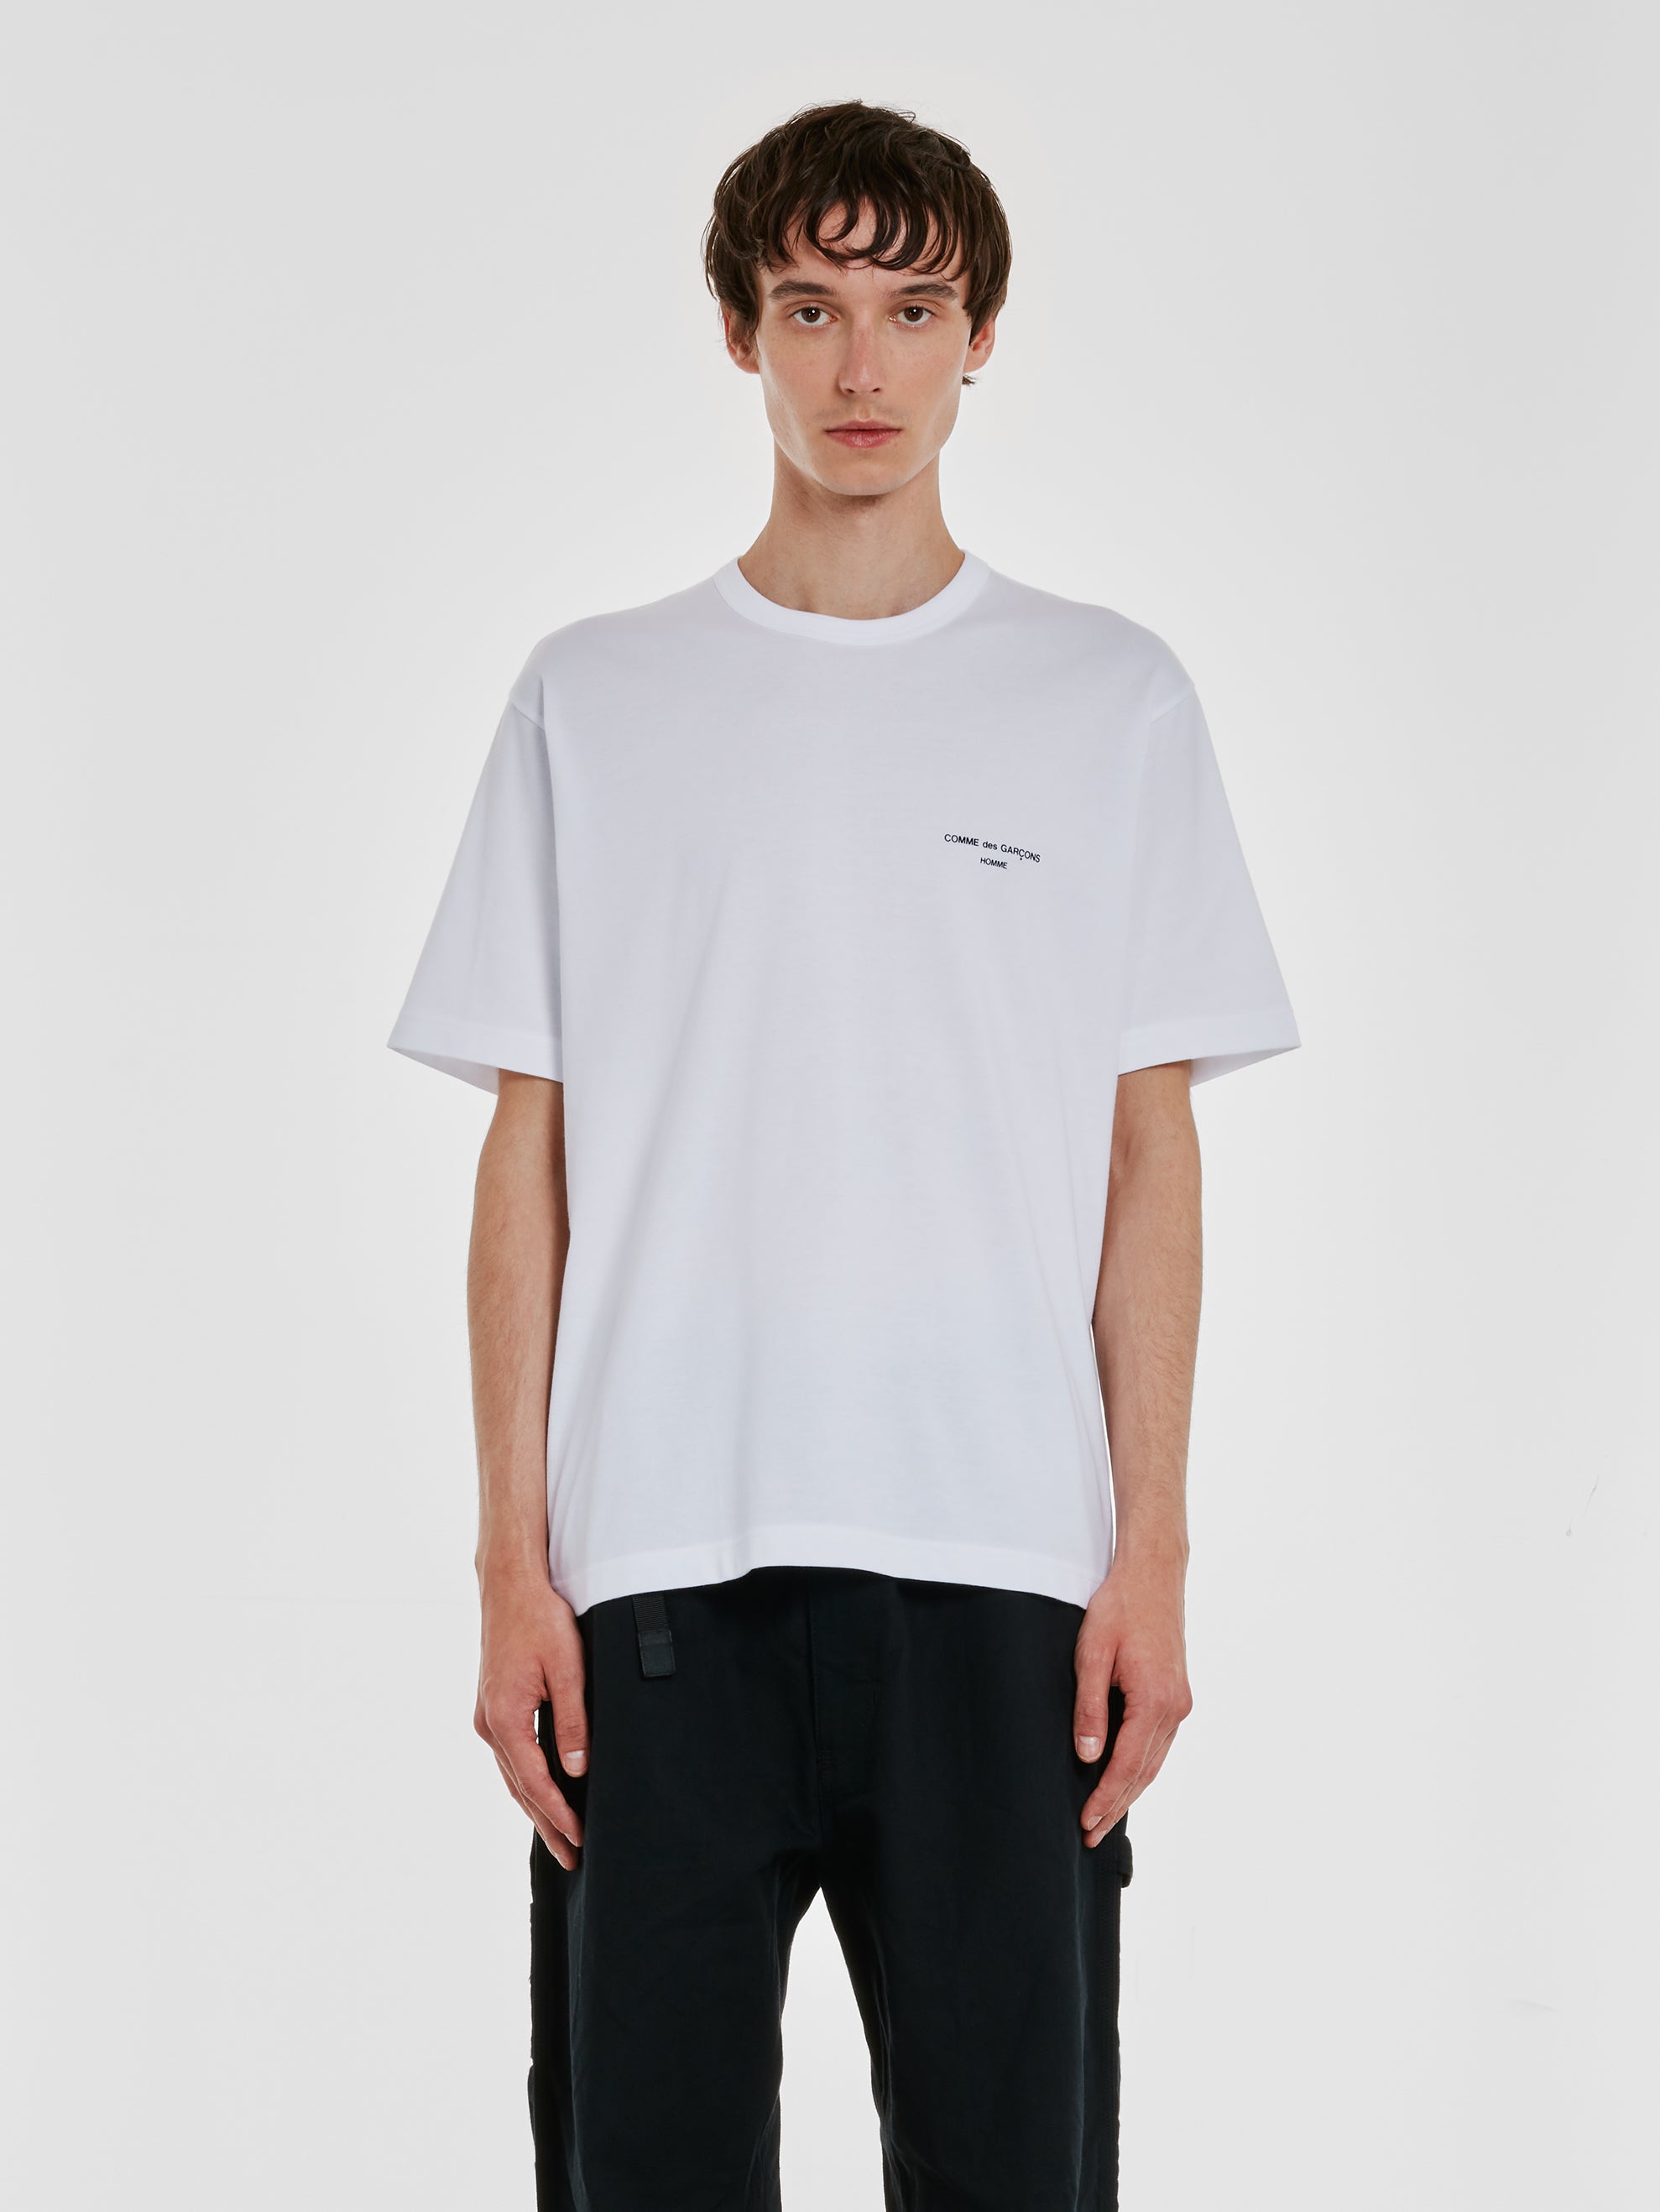 Comme des Garçons Homme - Men’s T-Shirt - (White) view 1